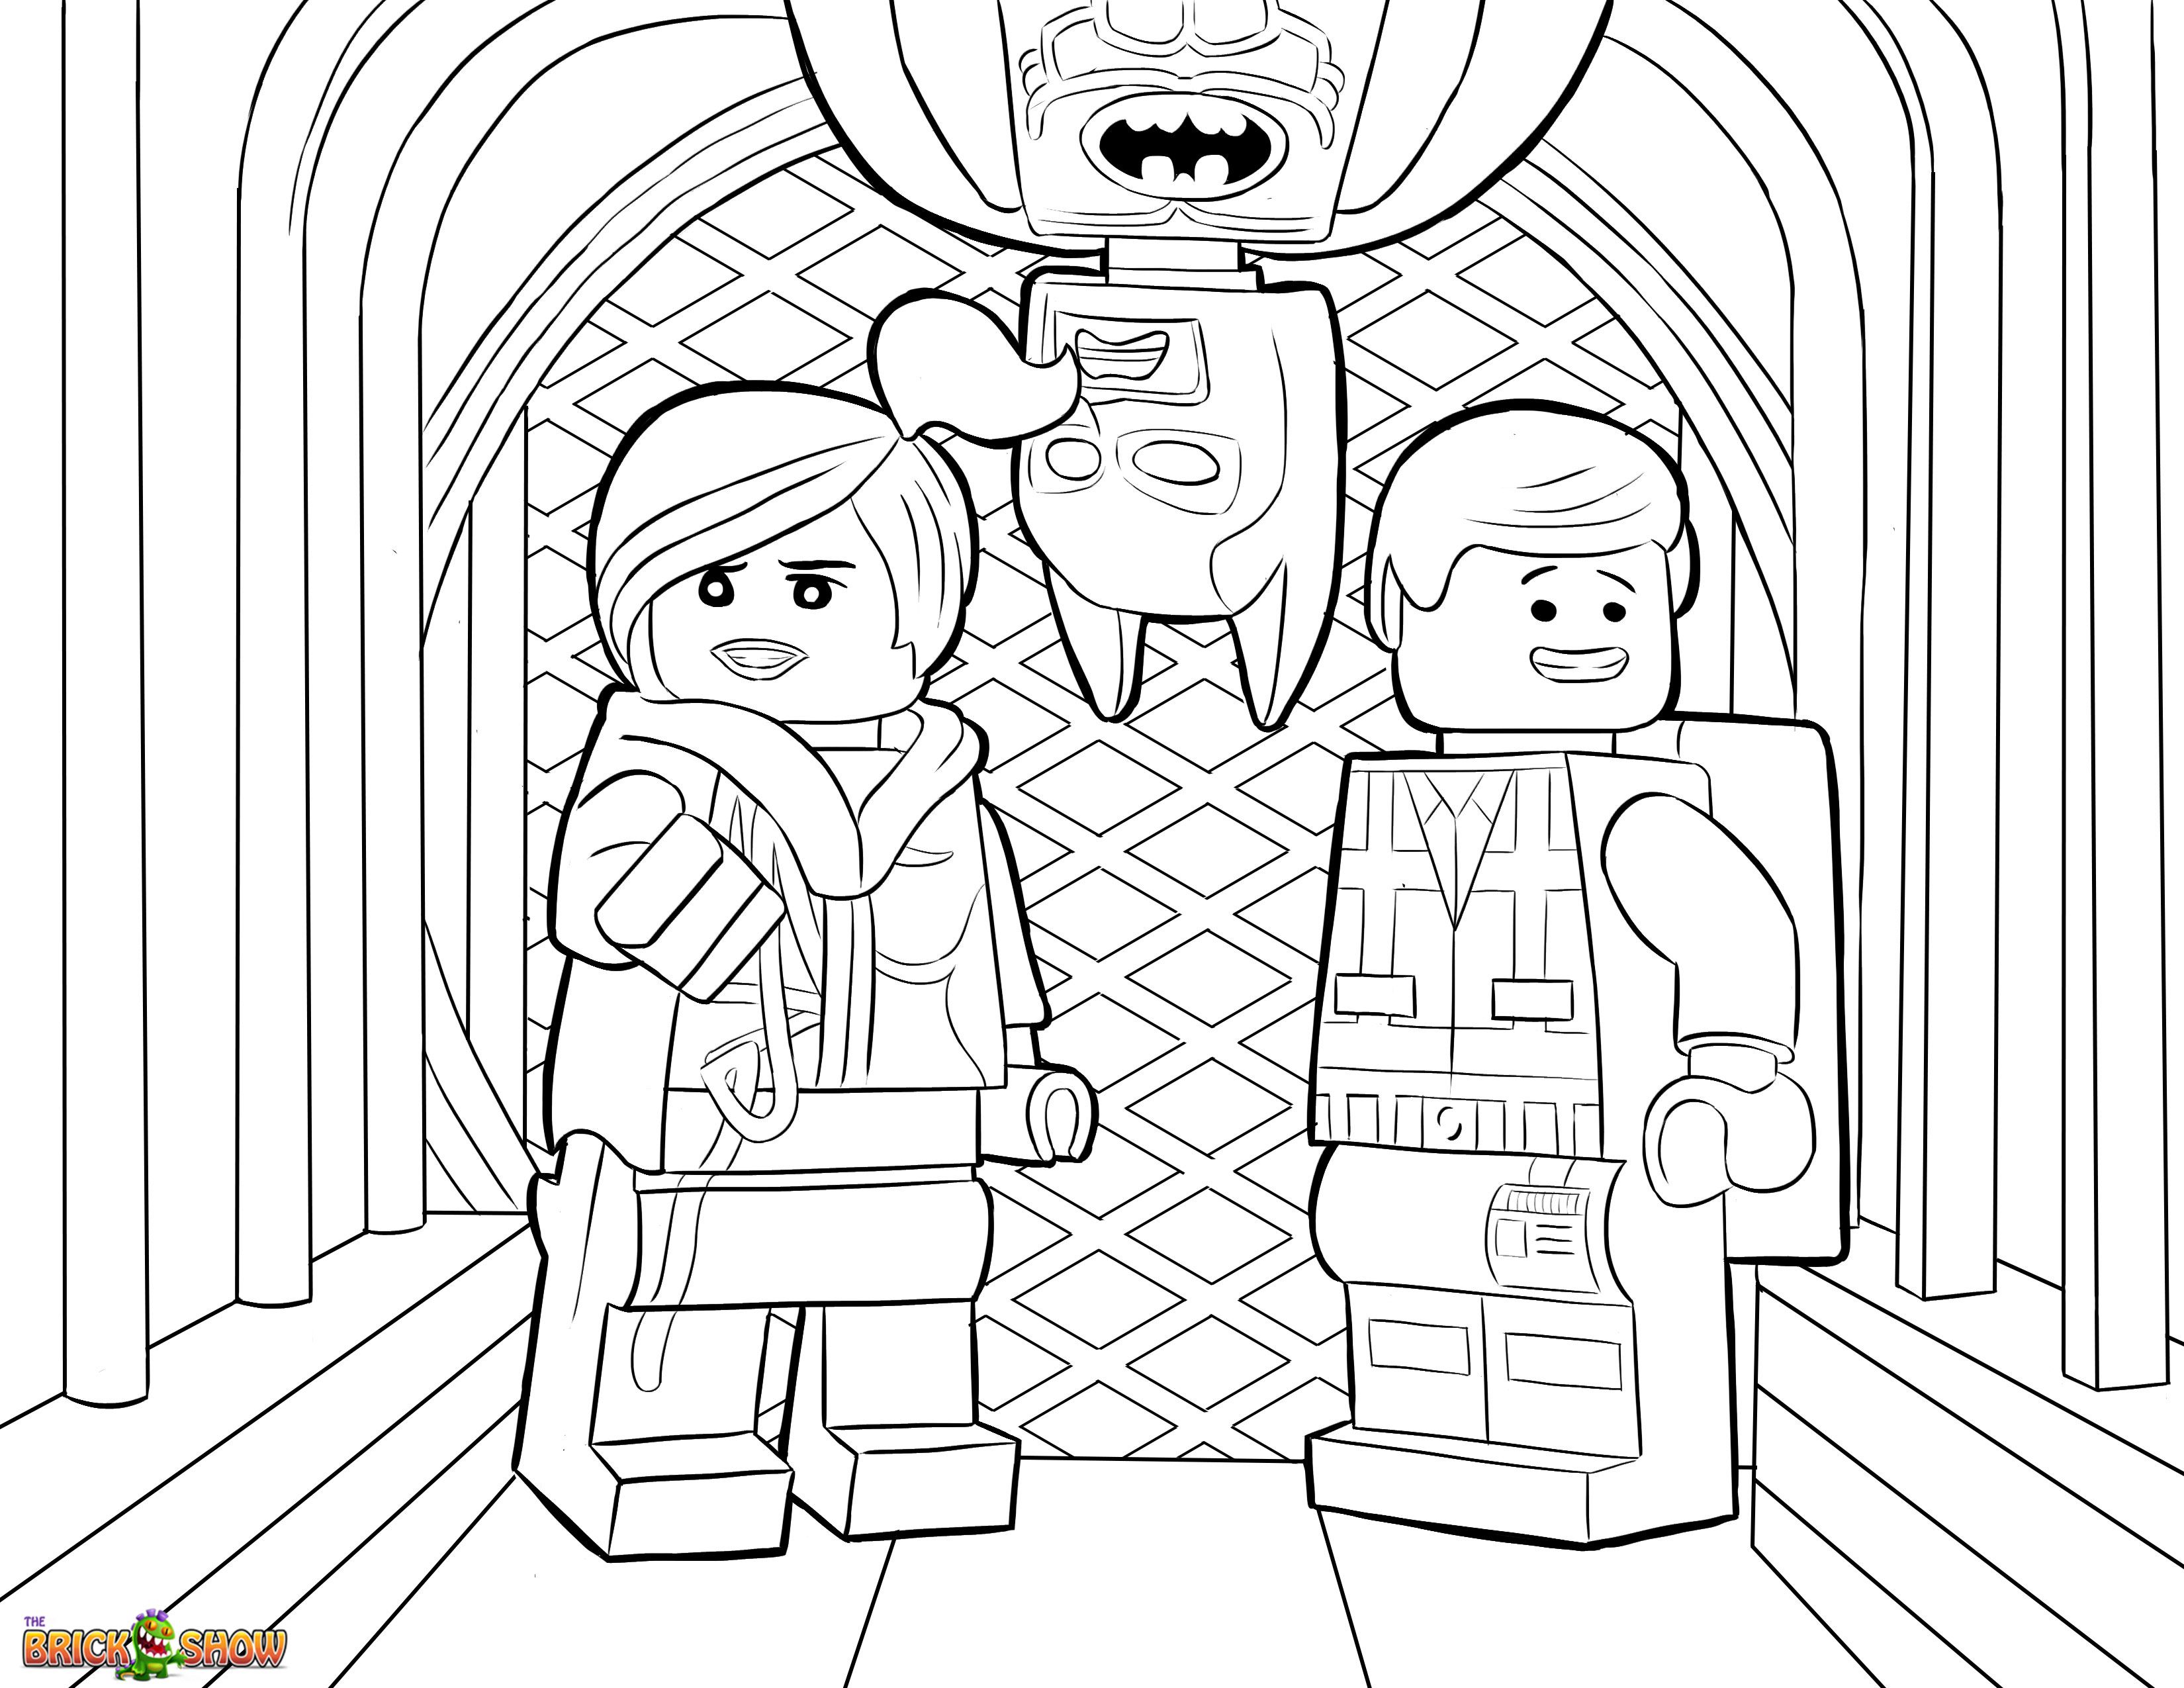 dibujos para colorear de lego movie 2 - Clip Art Library